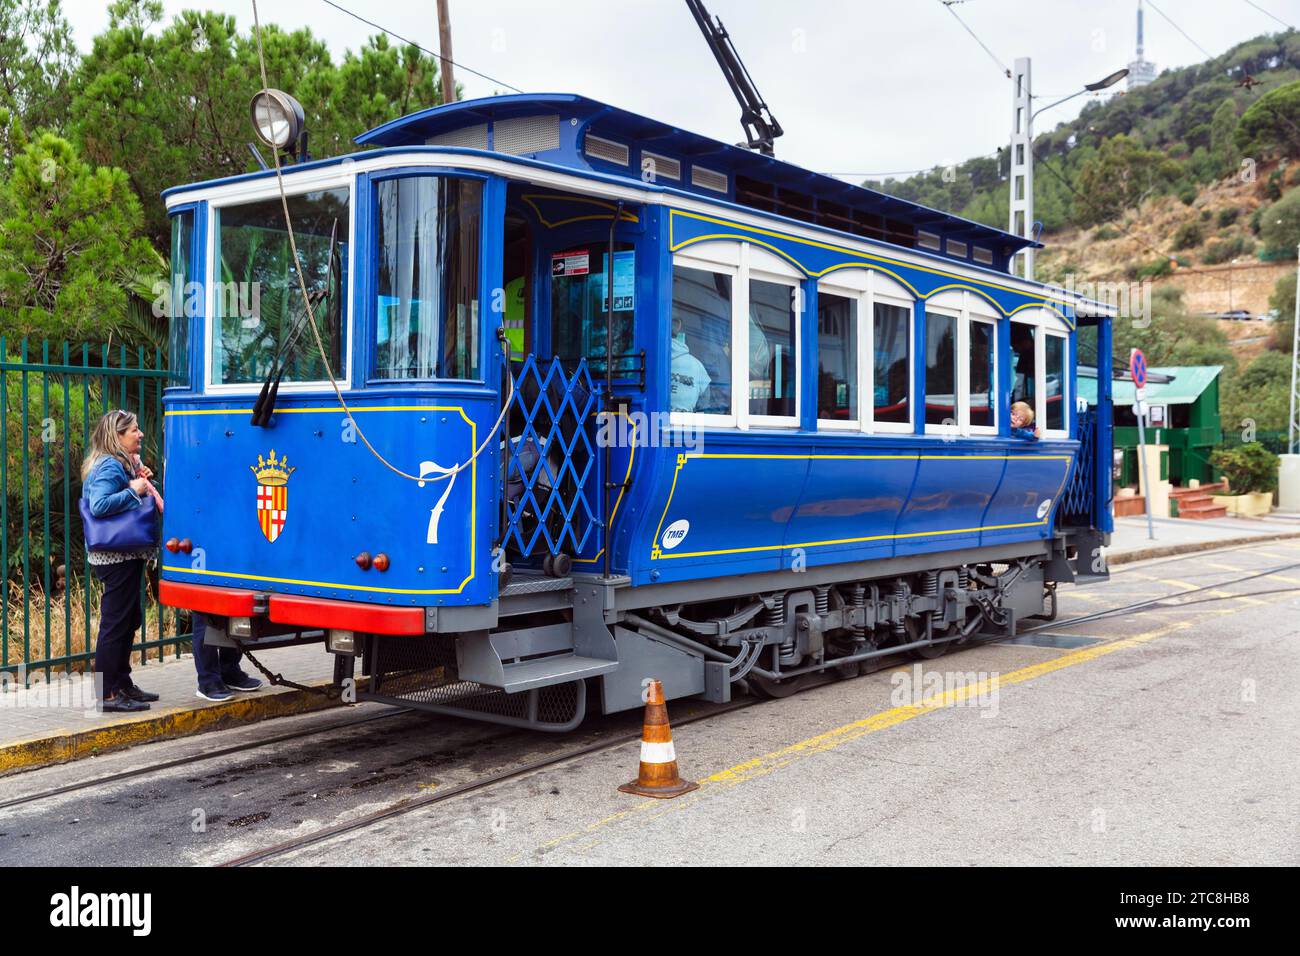 Tram blu nostalgico, turisti alla fermata del tram, Tramvia Blau, Art Nouveau, Tibidabo, Barcellona, Spagna Foto Stock